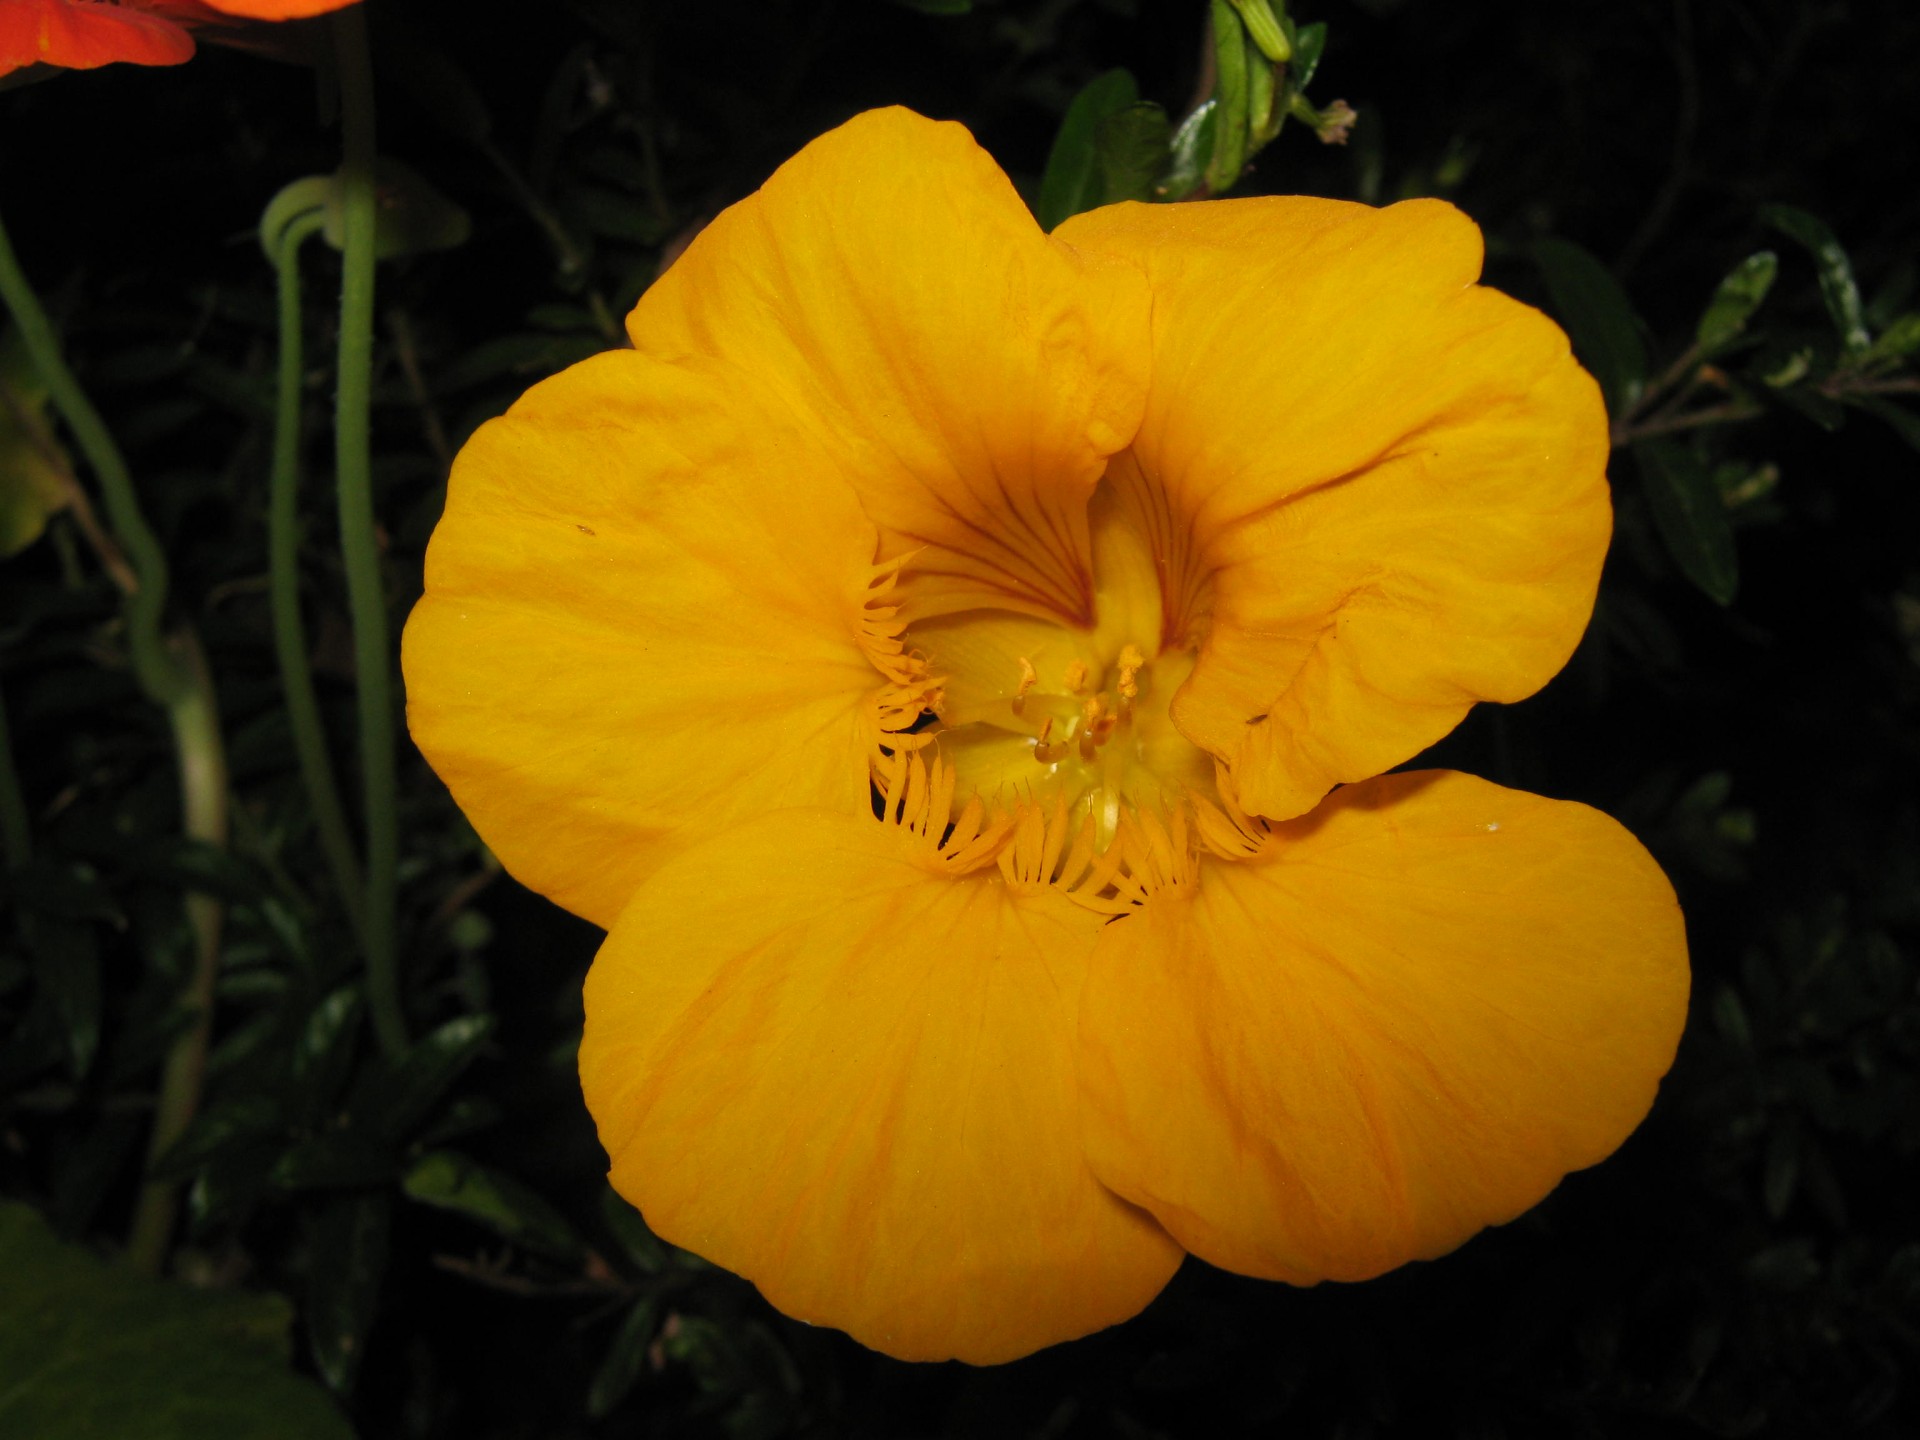 yellow nasturtium flower free photo